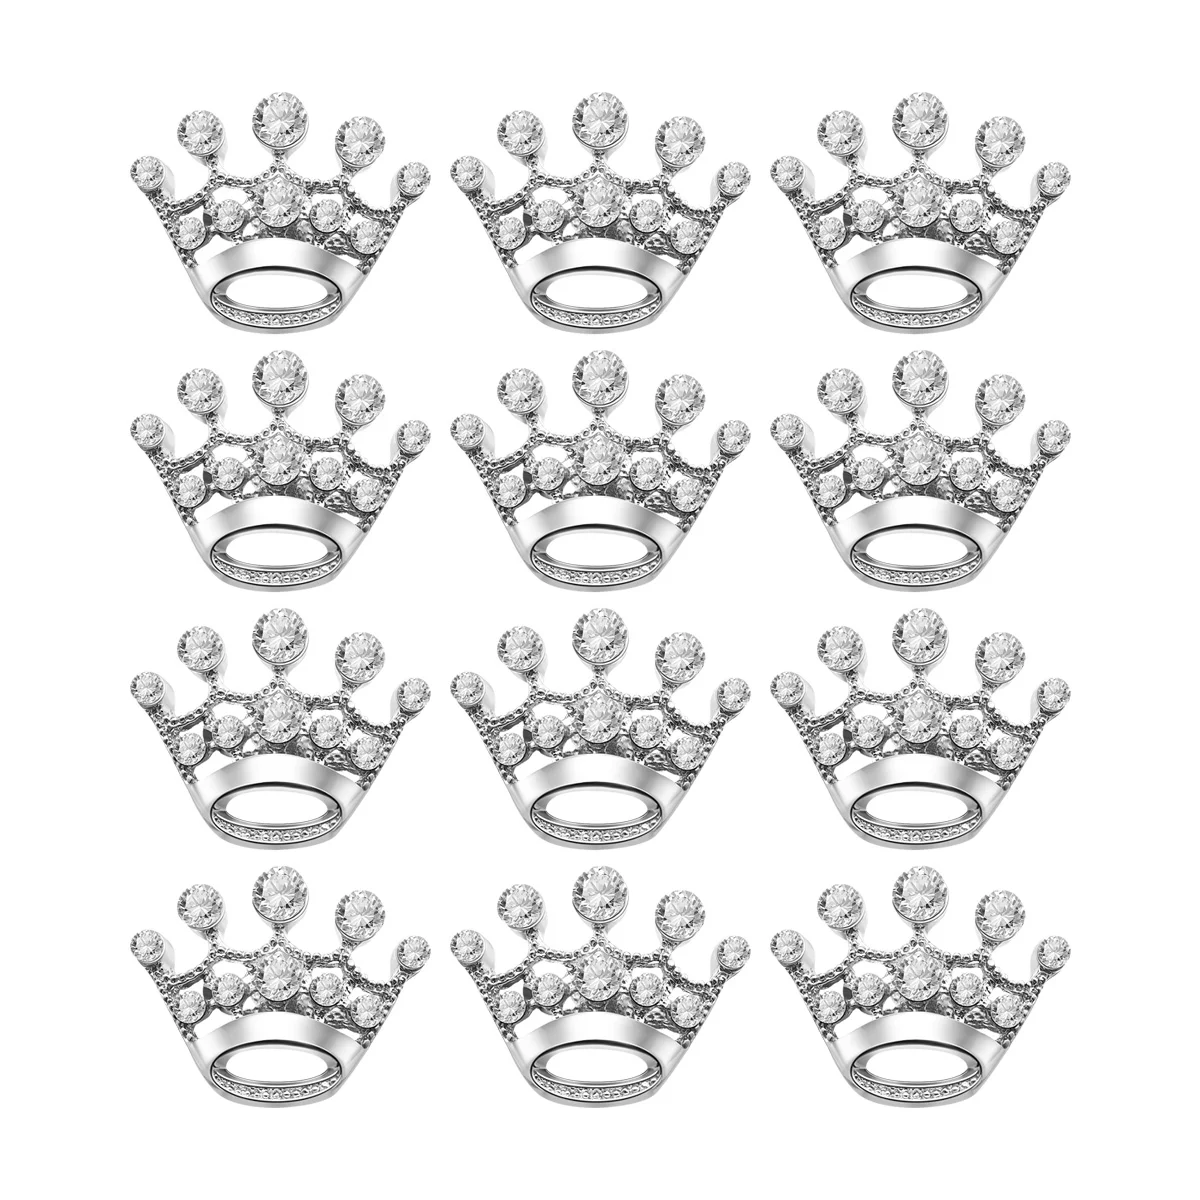 

TinkSky 12 шт. модные бриллиантовые броши для свадебной вечеринки тиара Корона (серебряные)